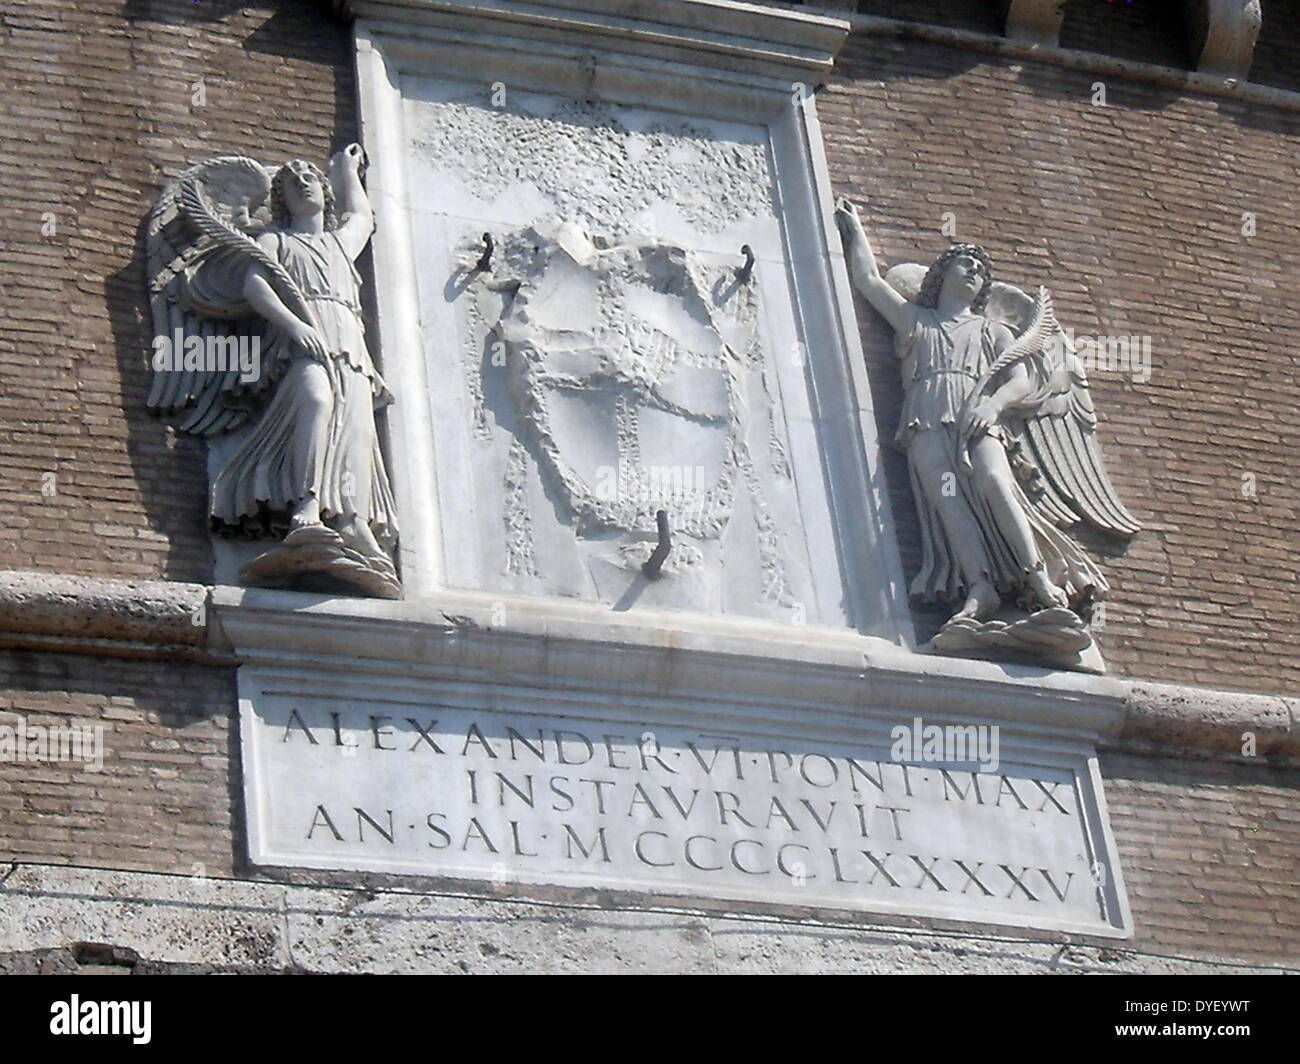 Dekorative Details aus der Umgebung von Castel Sant'Angelo und die Ponte Sant'Angelo in Rom, Italien. Viele dekorative bildhauerischen und architektonischen Details schmücken die Länge der Brücke, sowie die Umgebung und das Castel Sant'Angelo. Dieses Bild zeigt Engel. Stockfoto